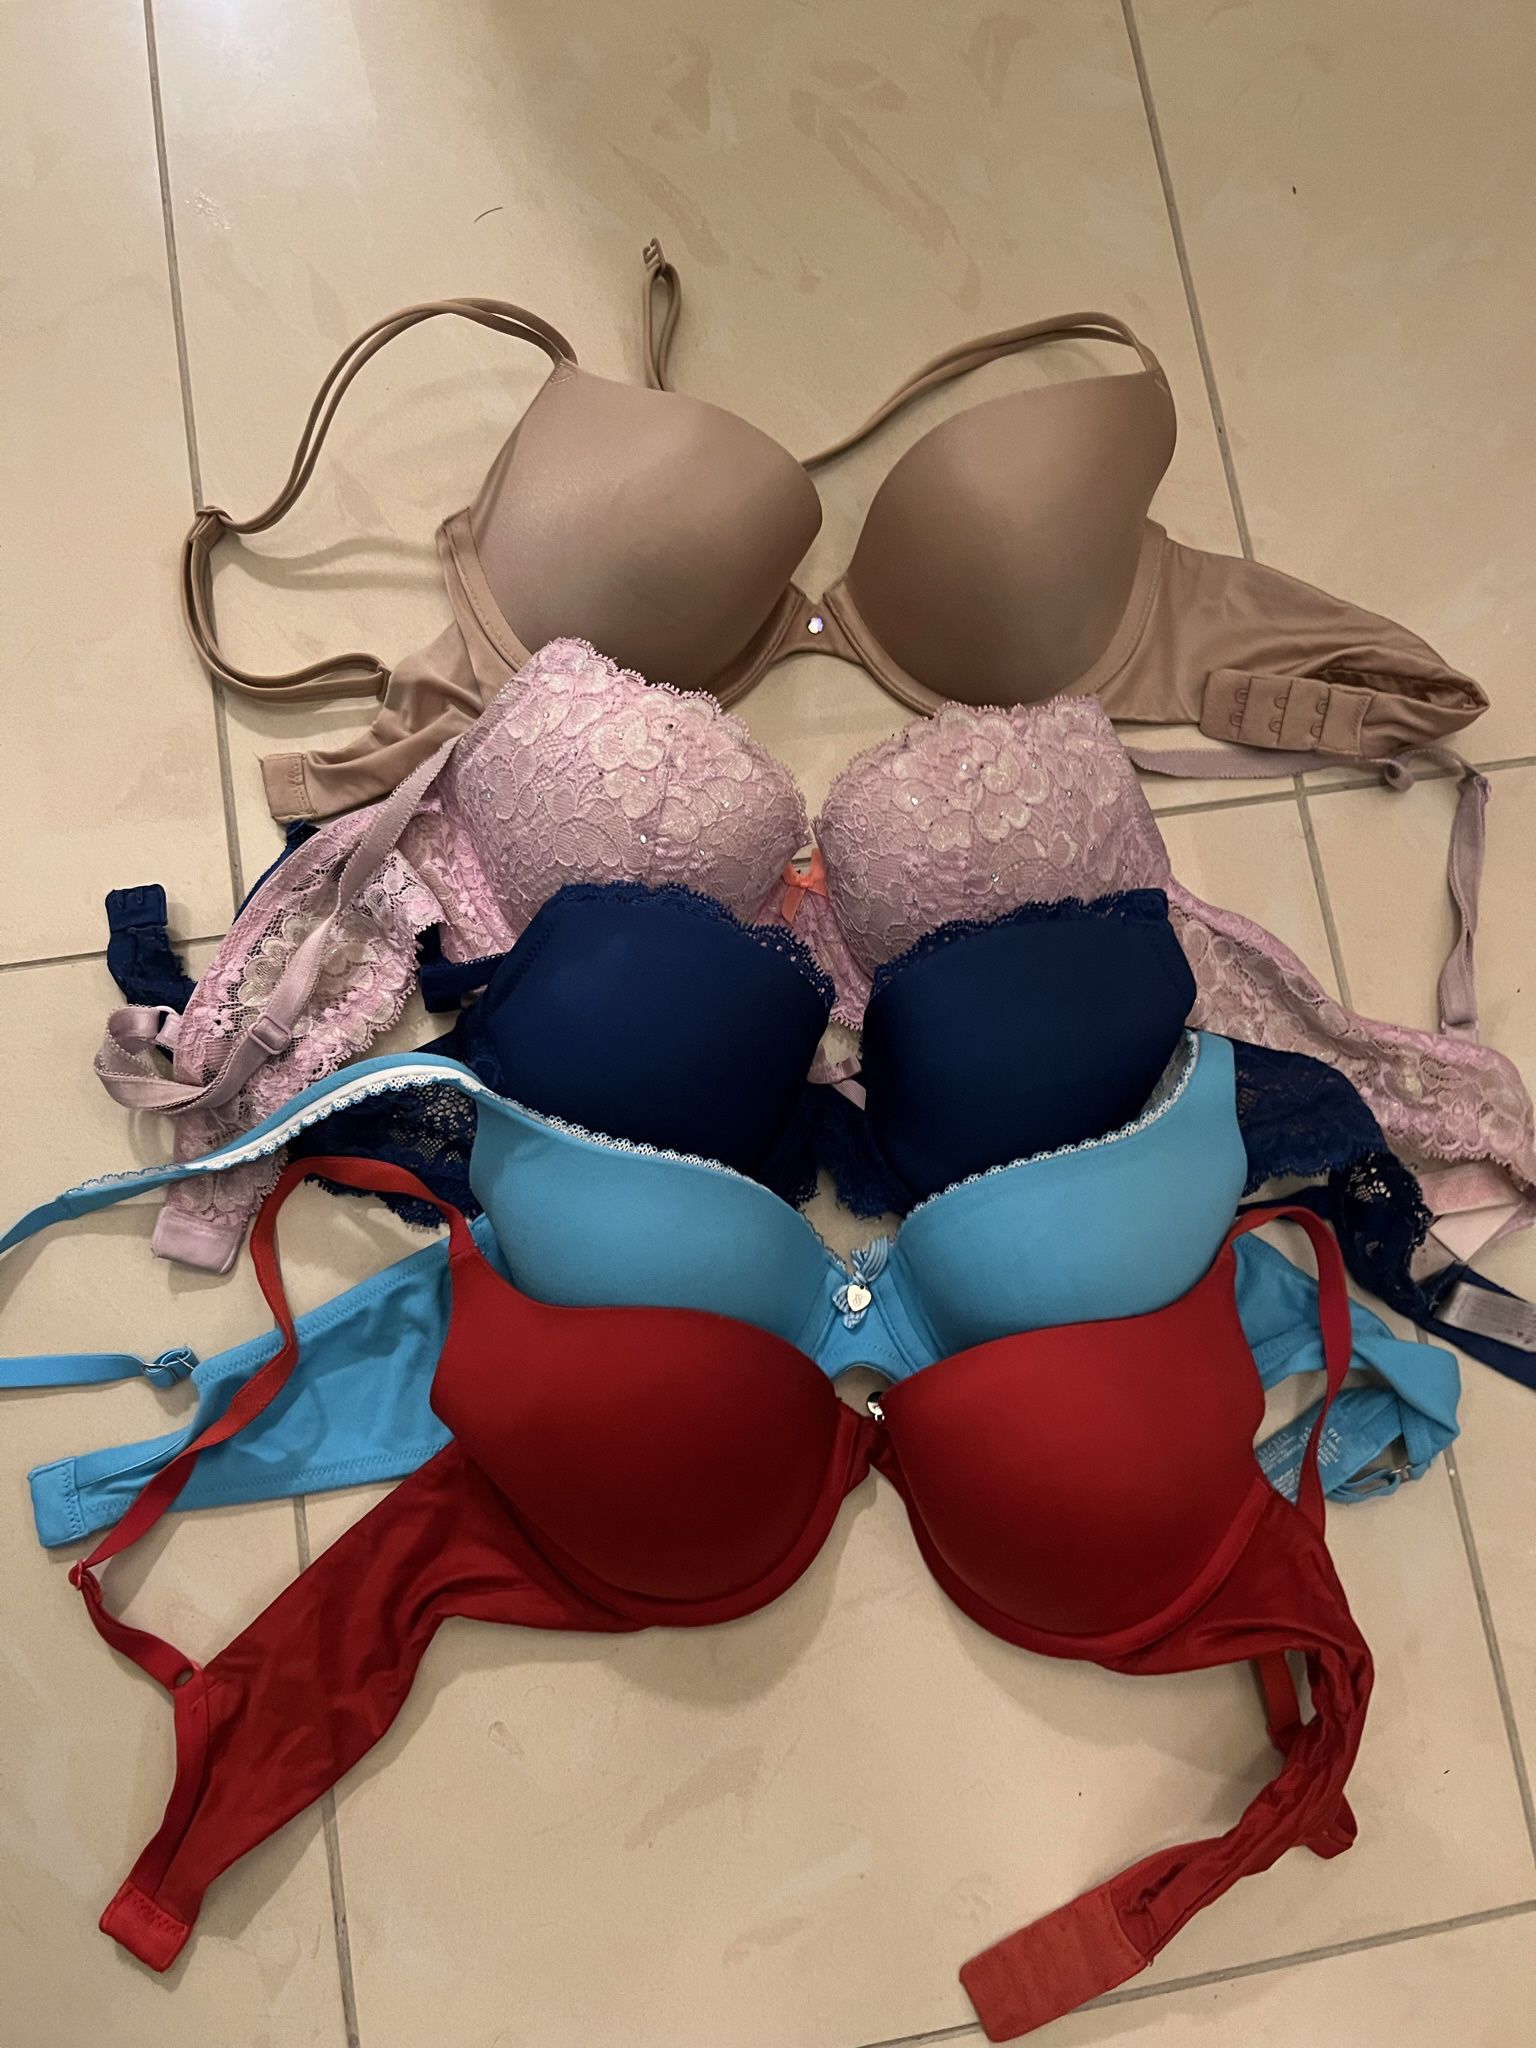 victoria's secret bras 34b for Sale in Rialto, CA - OfferUp